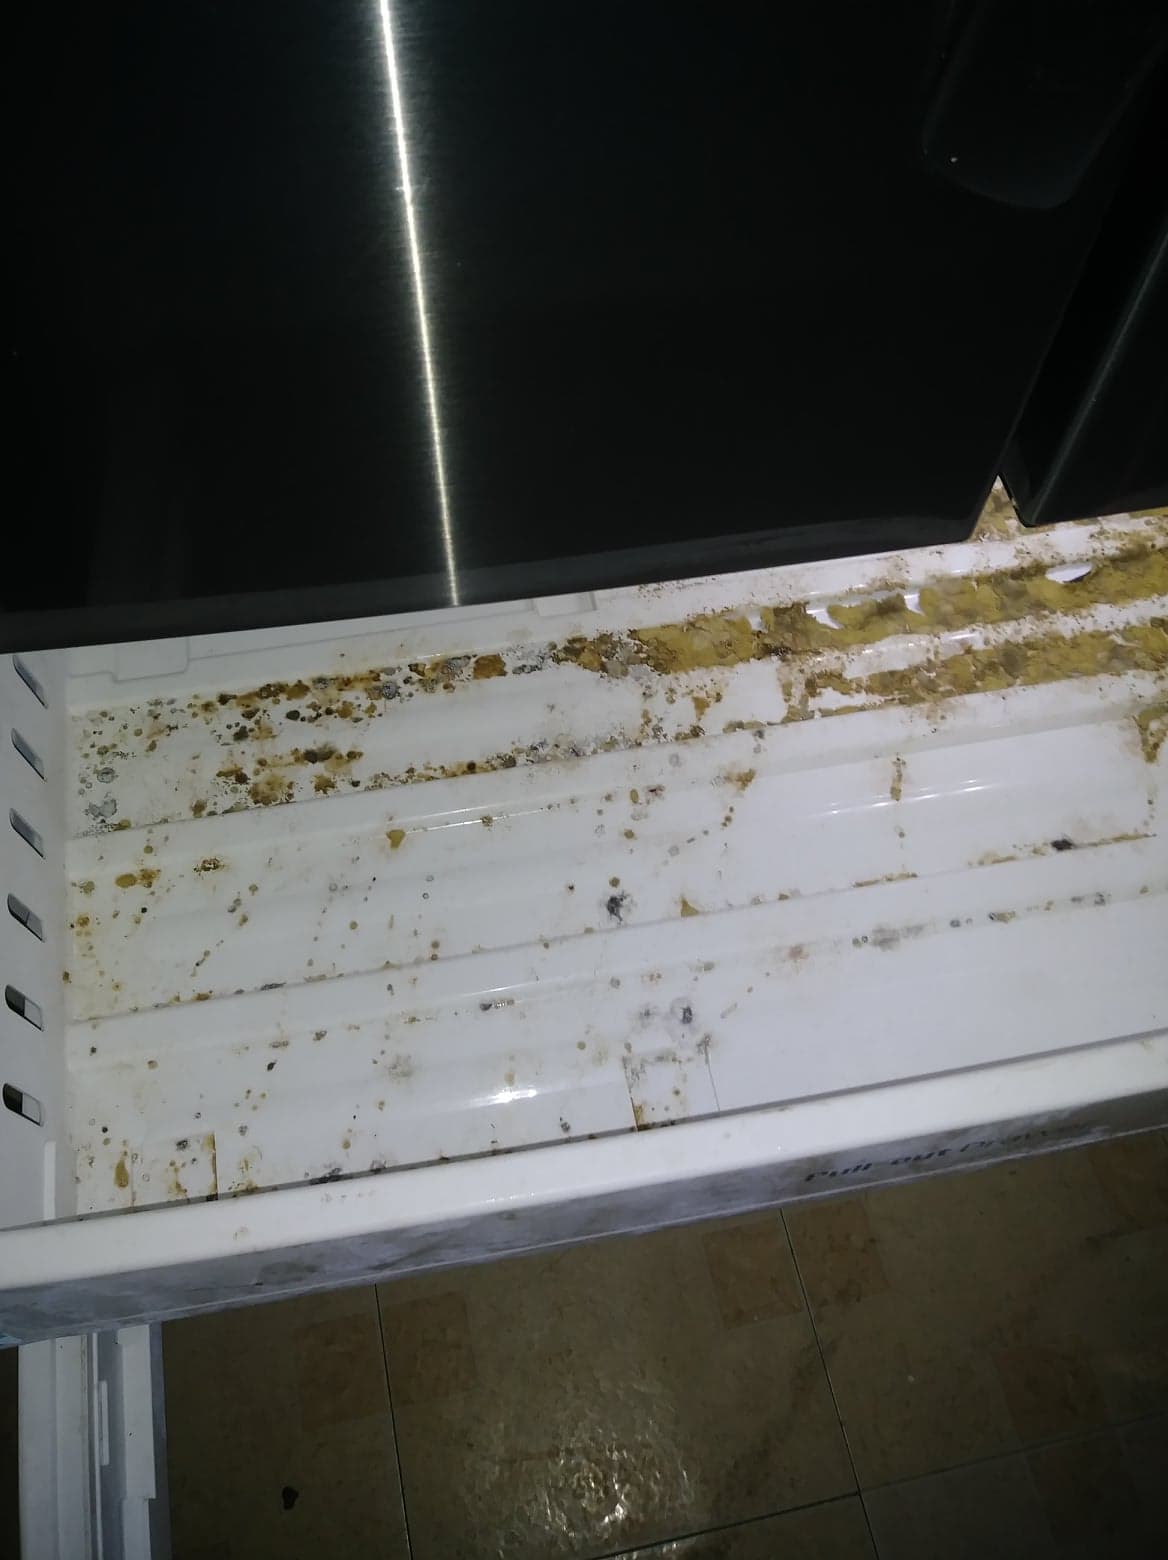 inside of refrigerator all moldy